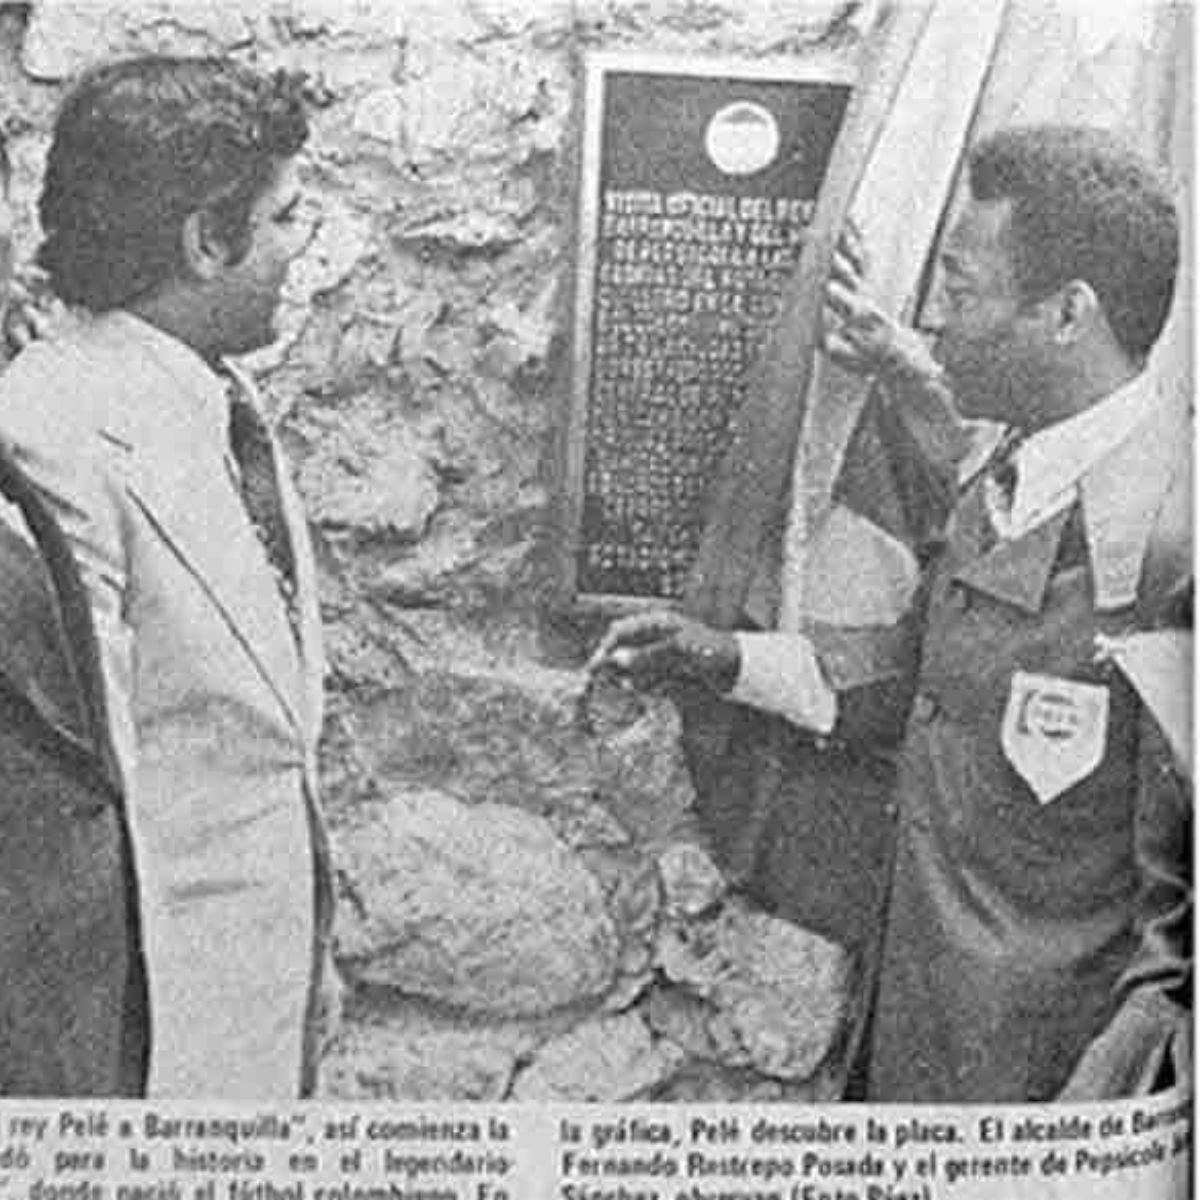 Visita de Pelé a Barranquilla - Este fue el primer estadio de Colombia, cuna del fútbol, que visitó Pelé y terminó en el olvido